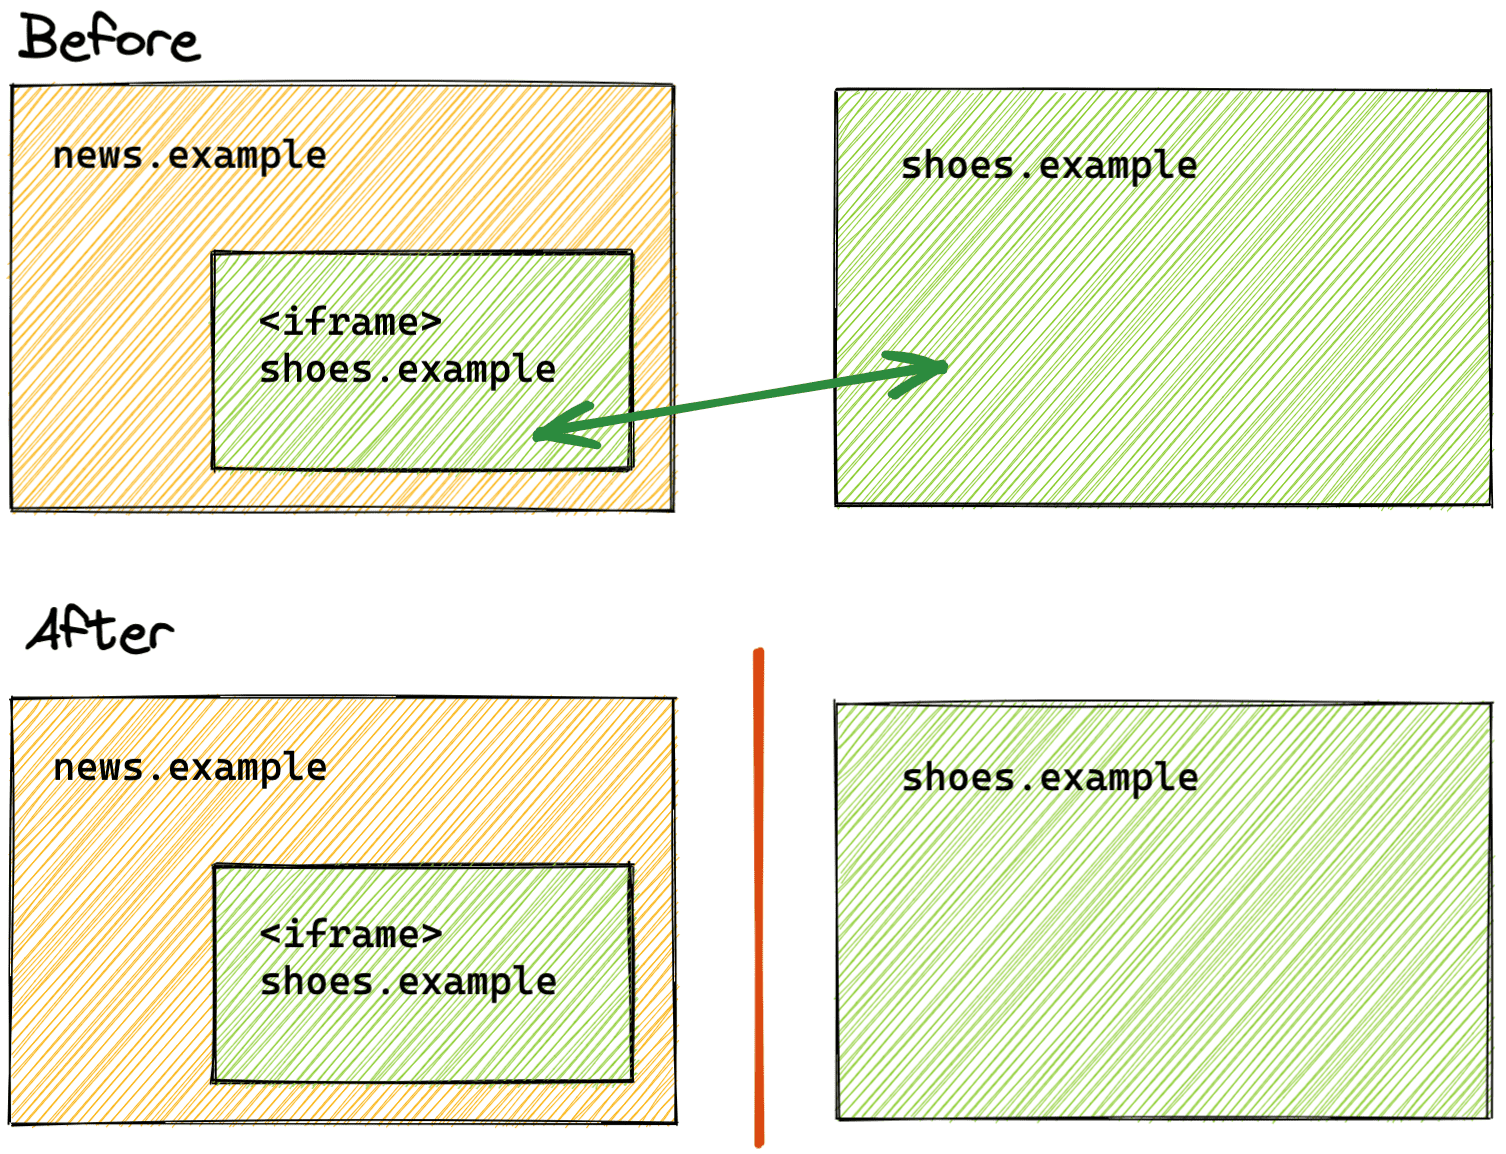 Una comparación del estado anterior y posterior de la partición del almacenamiento.